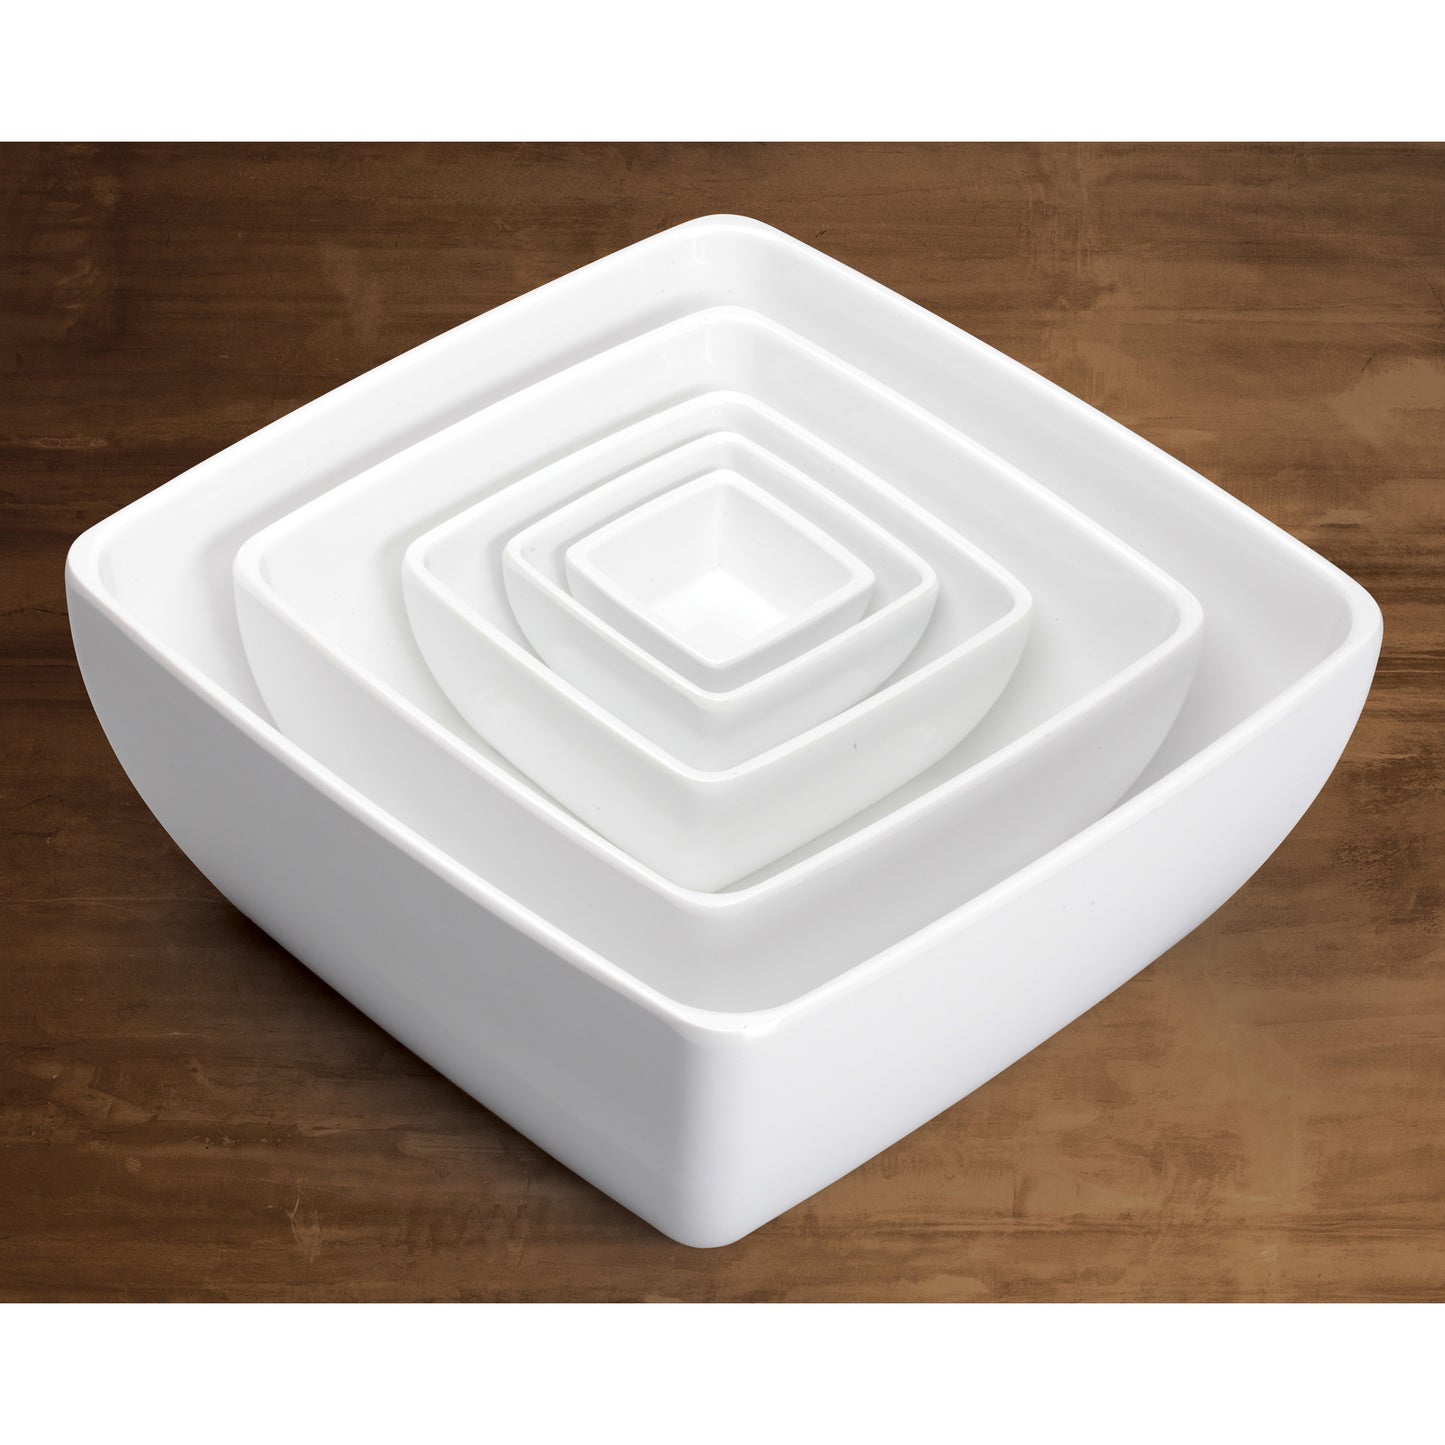 WDM009-204 - 7-1/2" Melamine Square Bowl, White, 12pcs/case